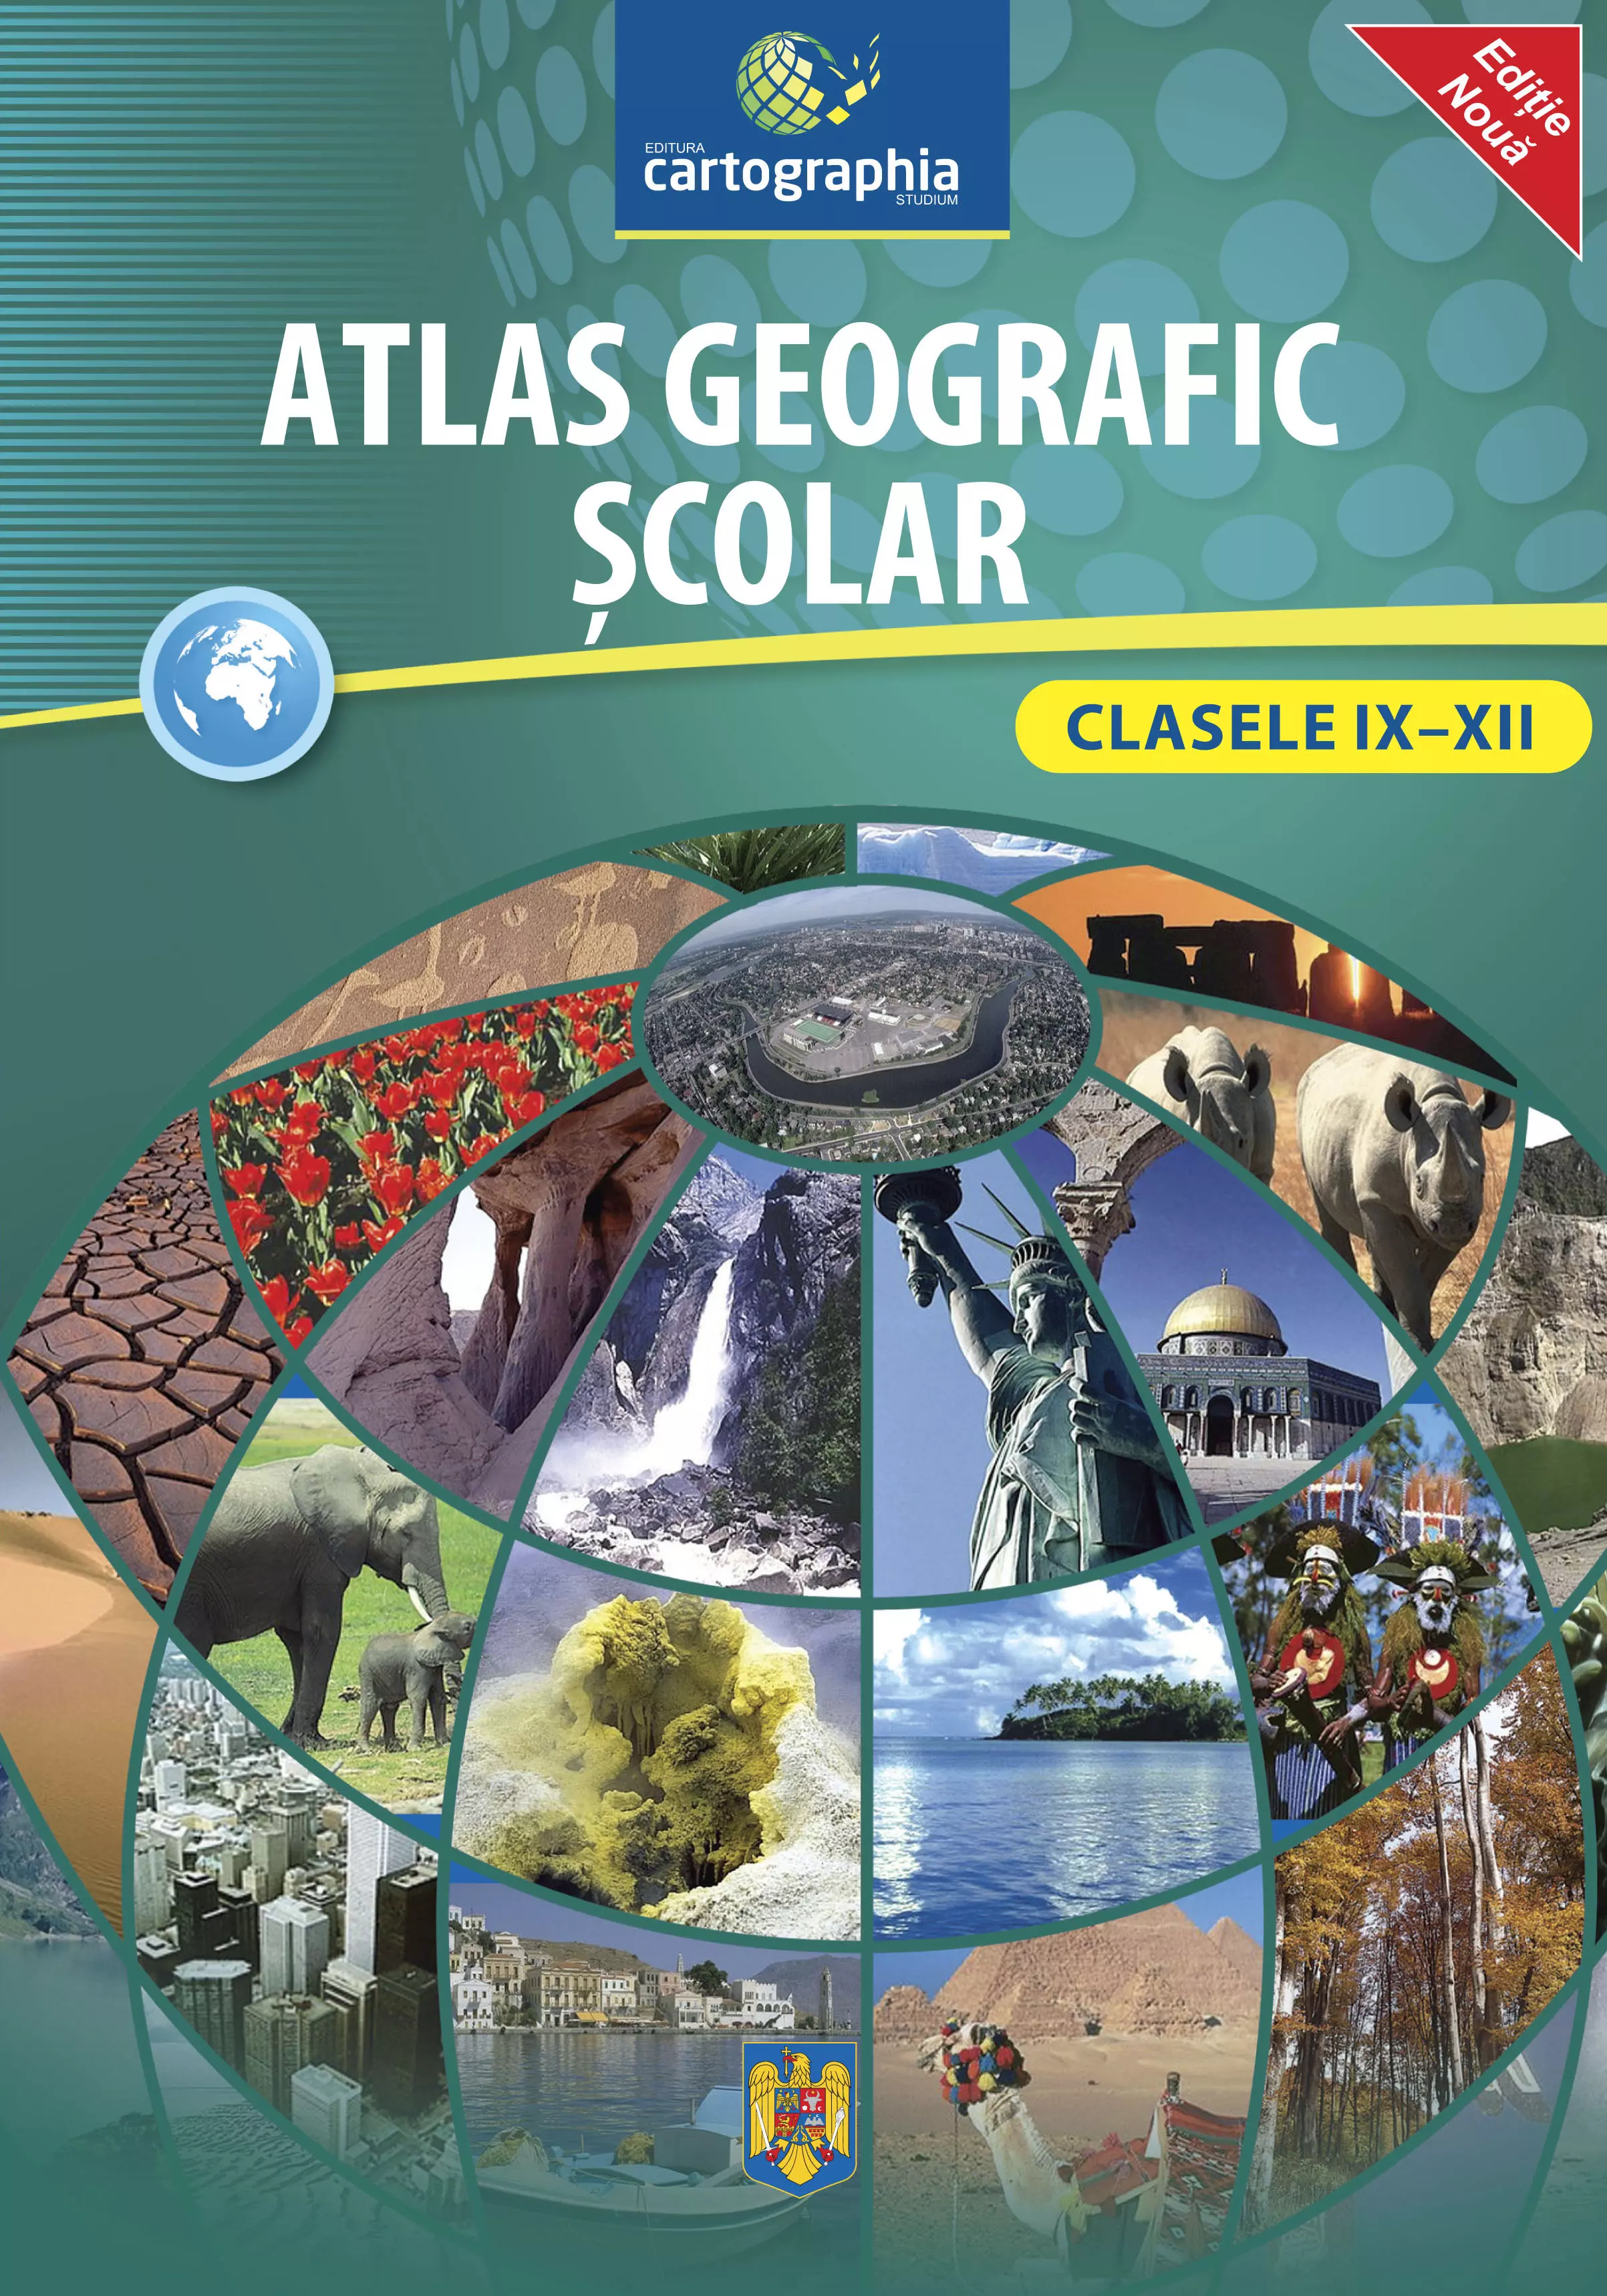 Atlas geografic şcolar pentru clasele IX-XII (CR-3013)